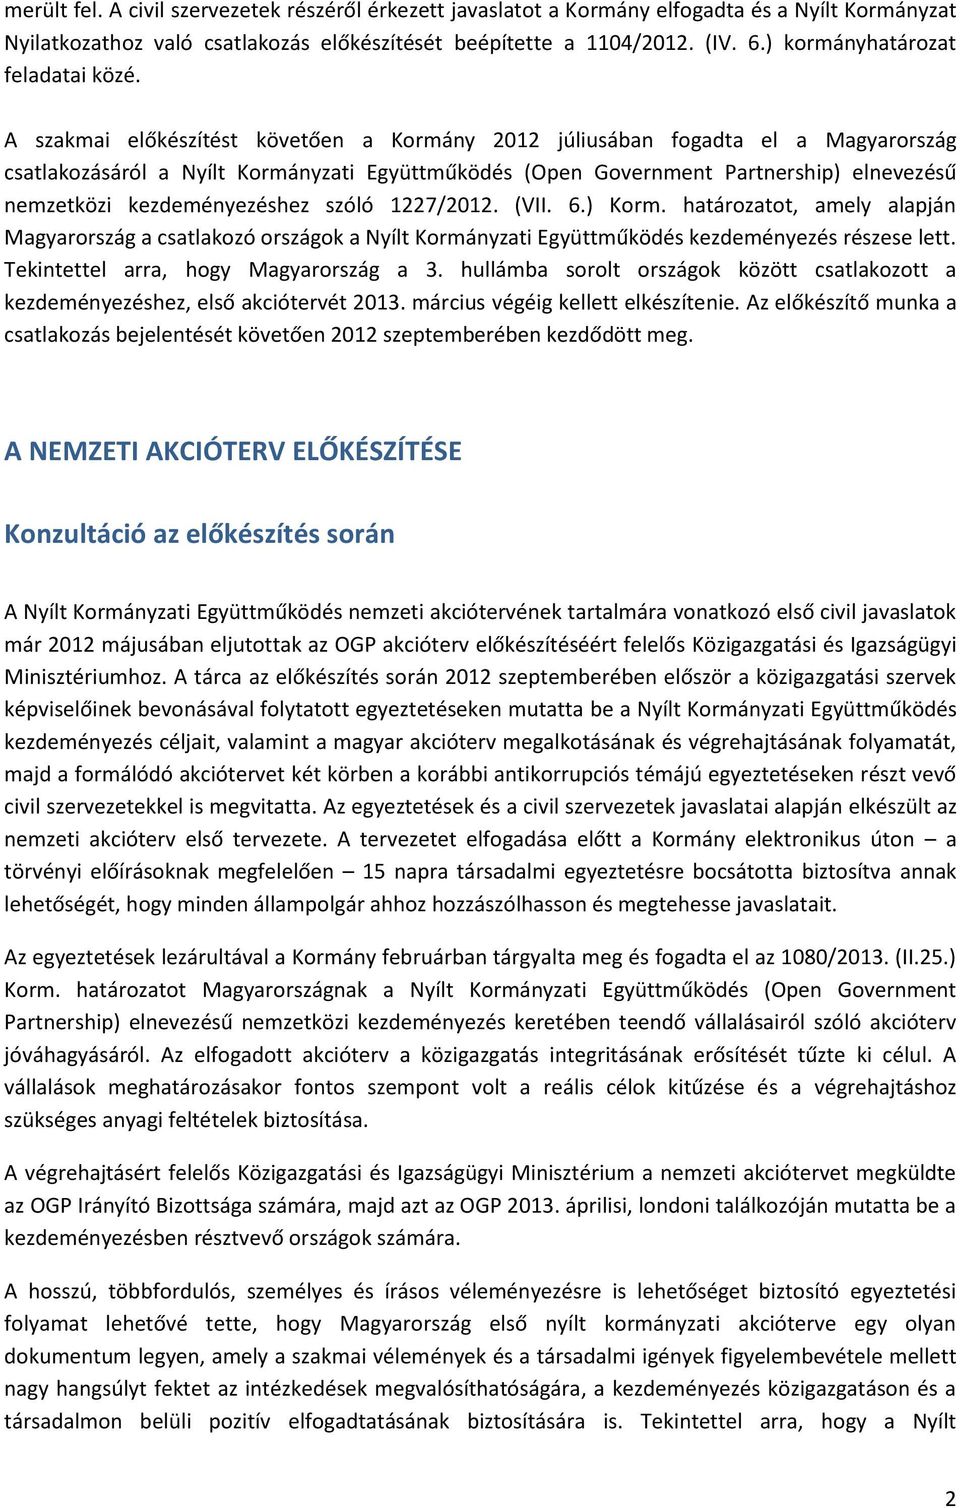 A szakmai előkészítést követően a Kormány 2012 júliusában fogadta el a Magyarország csatlakozásáról a Nyílt Kormányzati Együttműködés (Open Government Partnership) elnevezésű nemzetközi